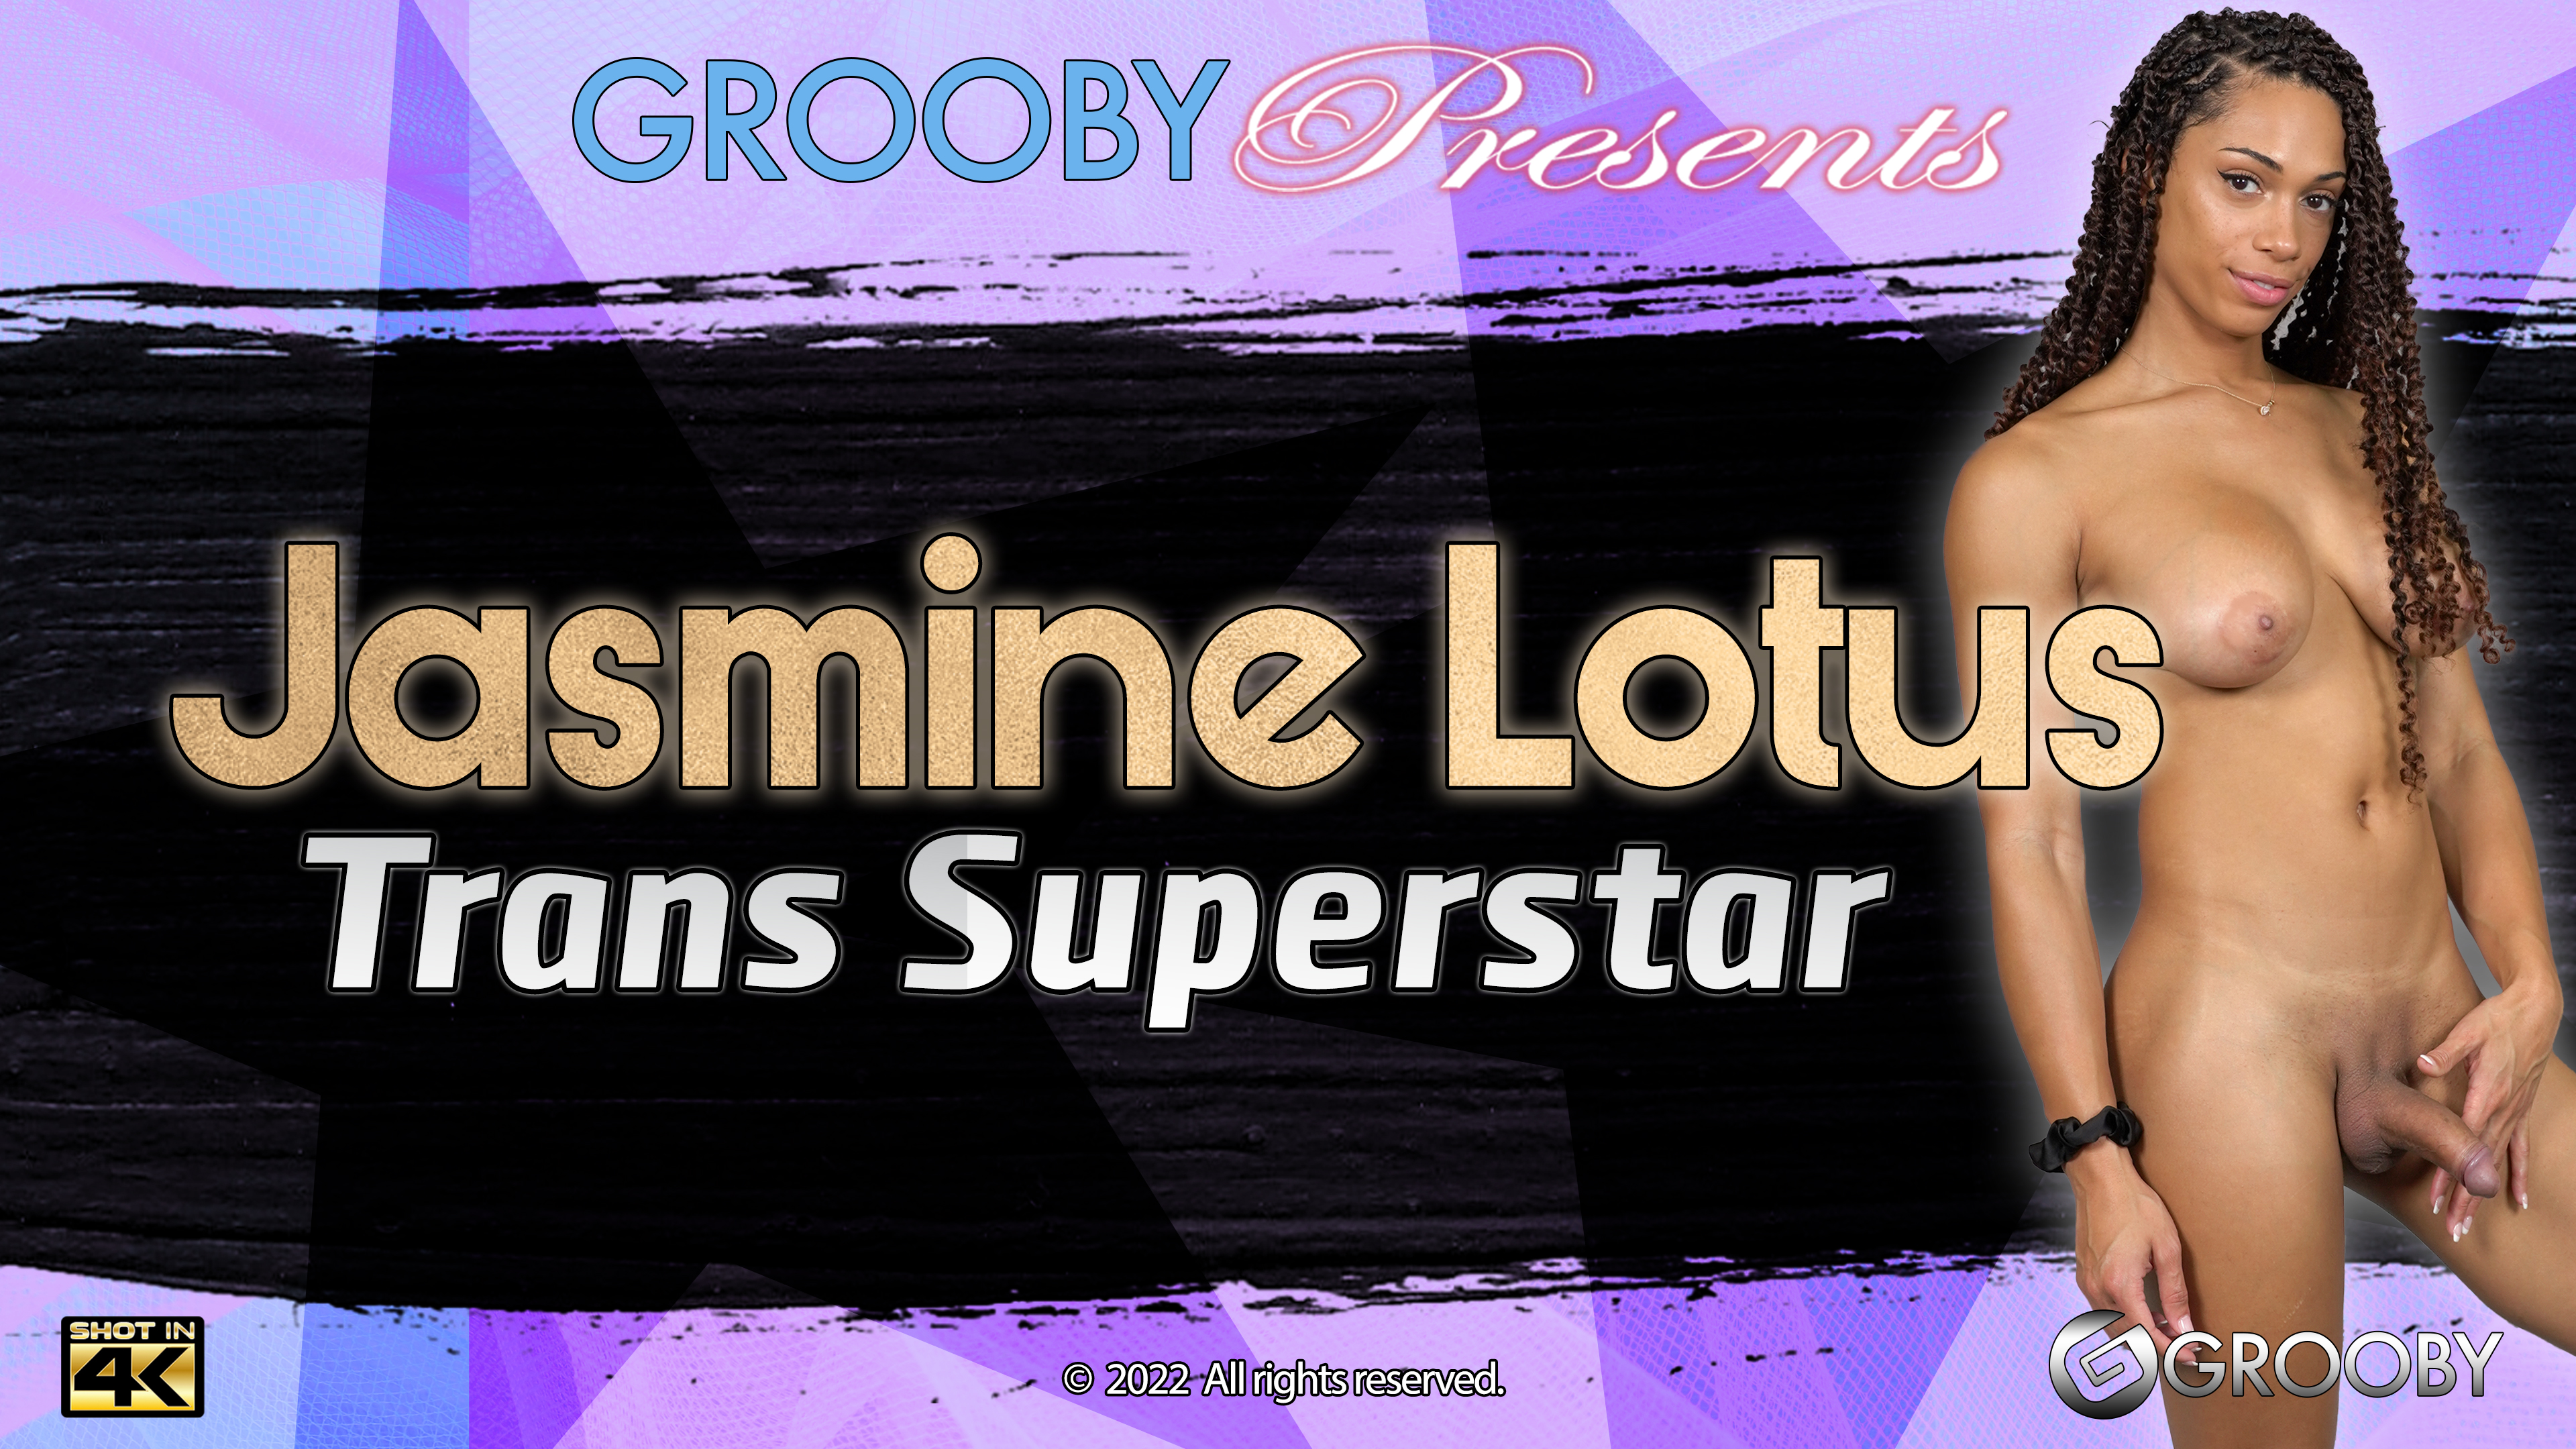 Jasmine Lotus: Trans Superstar DVD Trailer